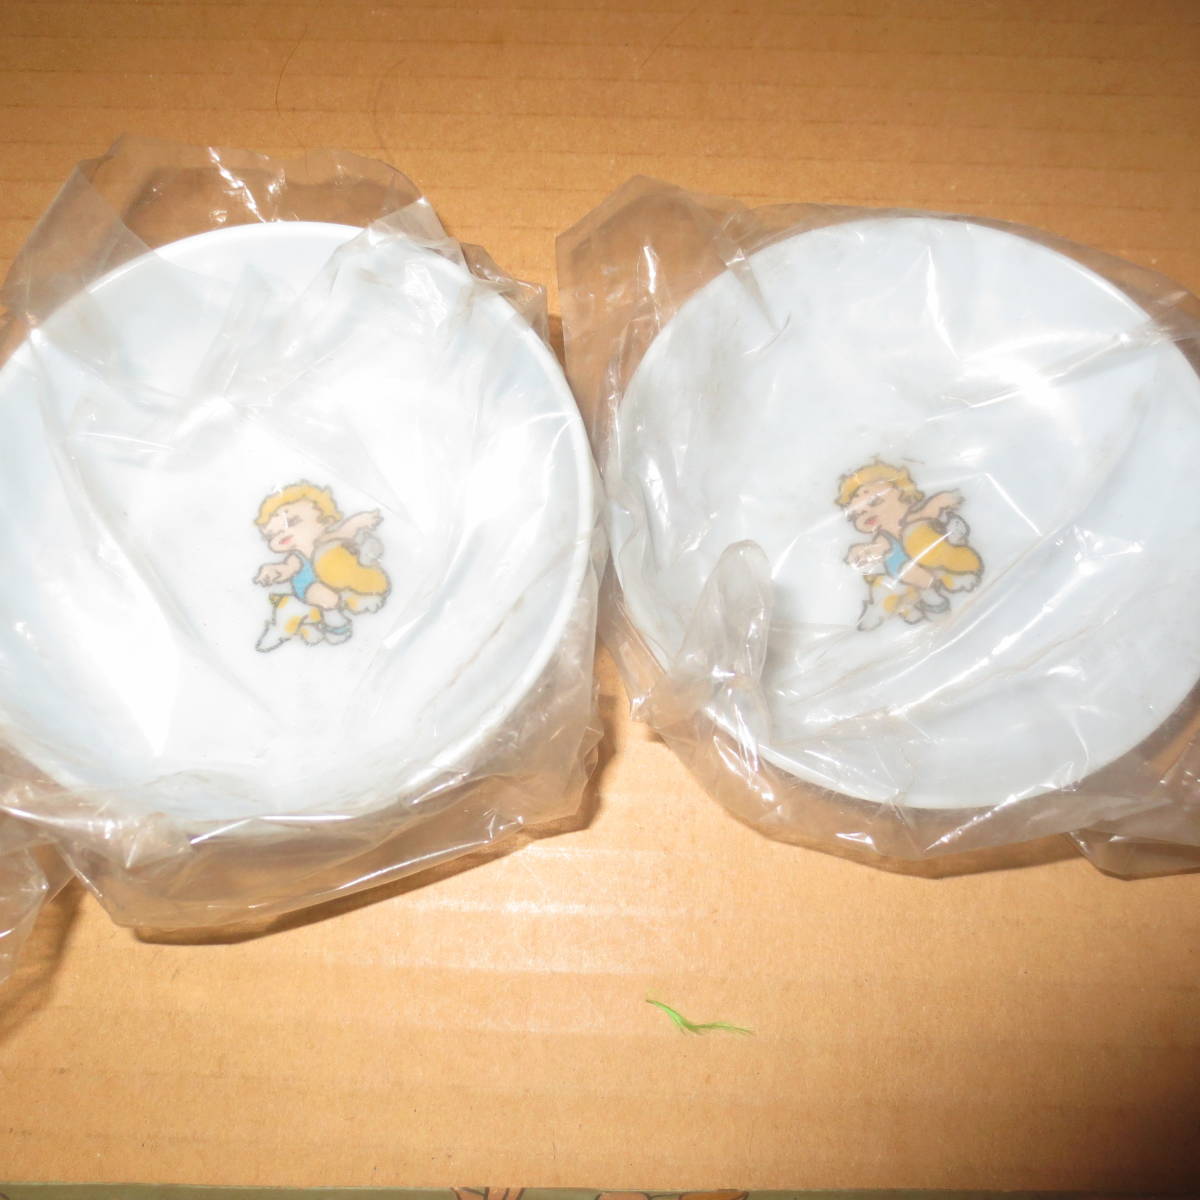  retro здравствуйте младенец церемния на рождение ребенка Okuizome посуда 7 позиций комплект melamin производства не использовался товар 